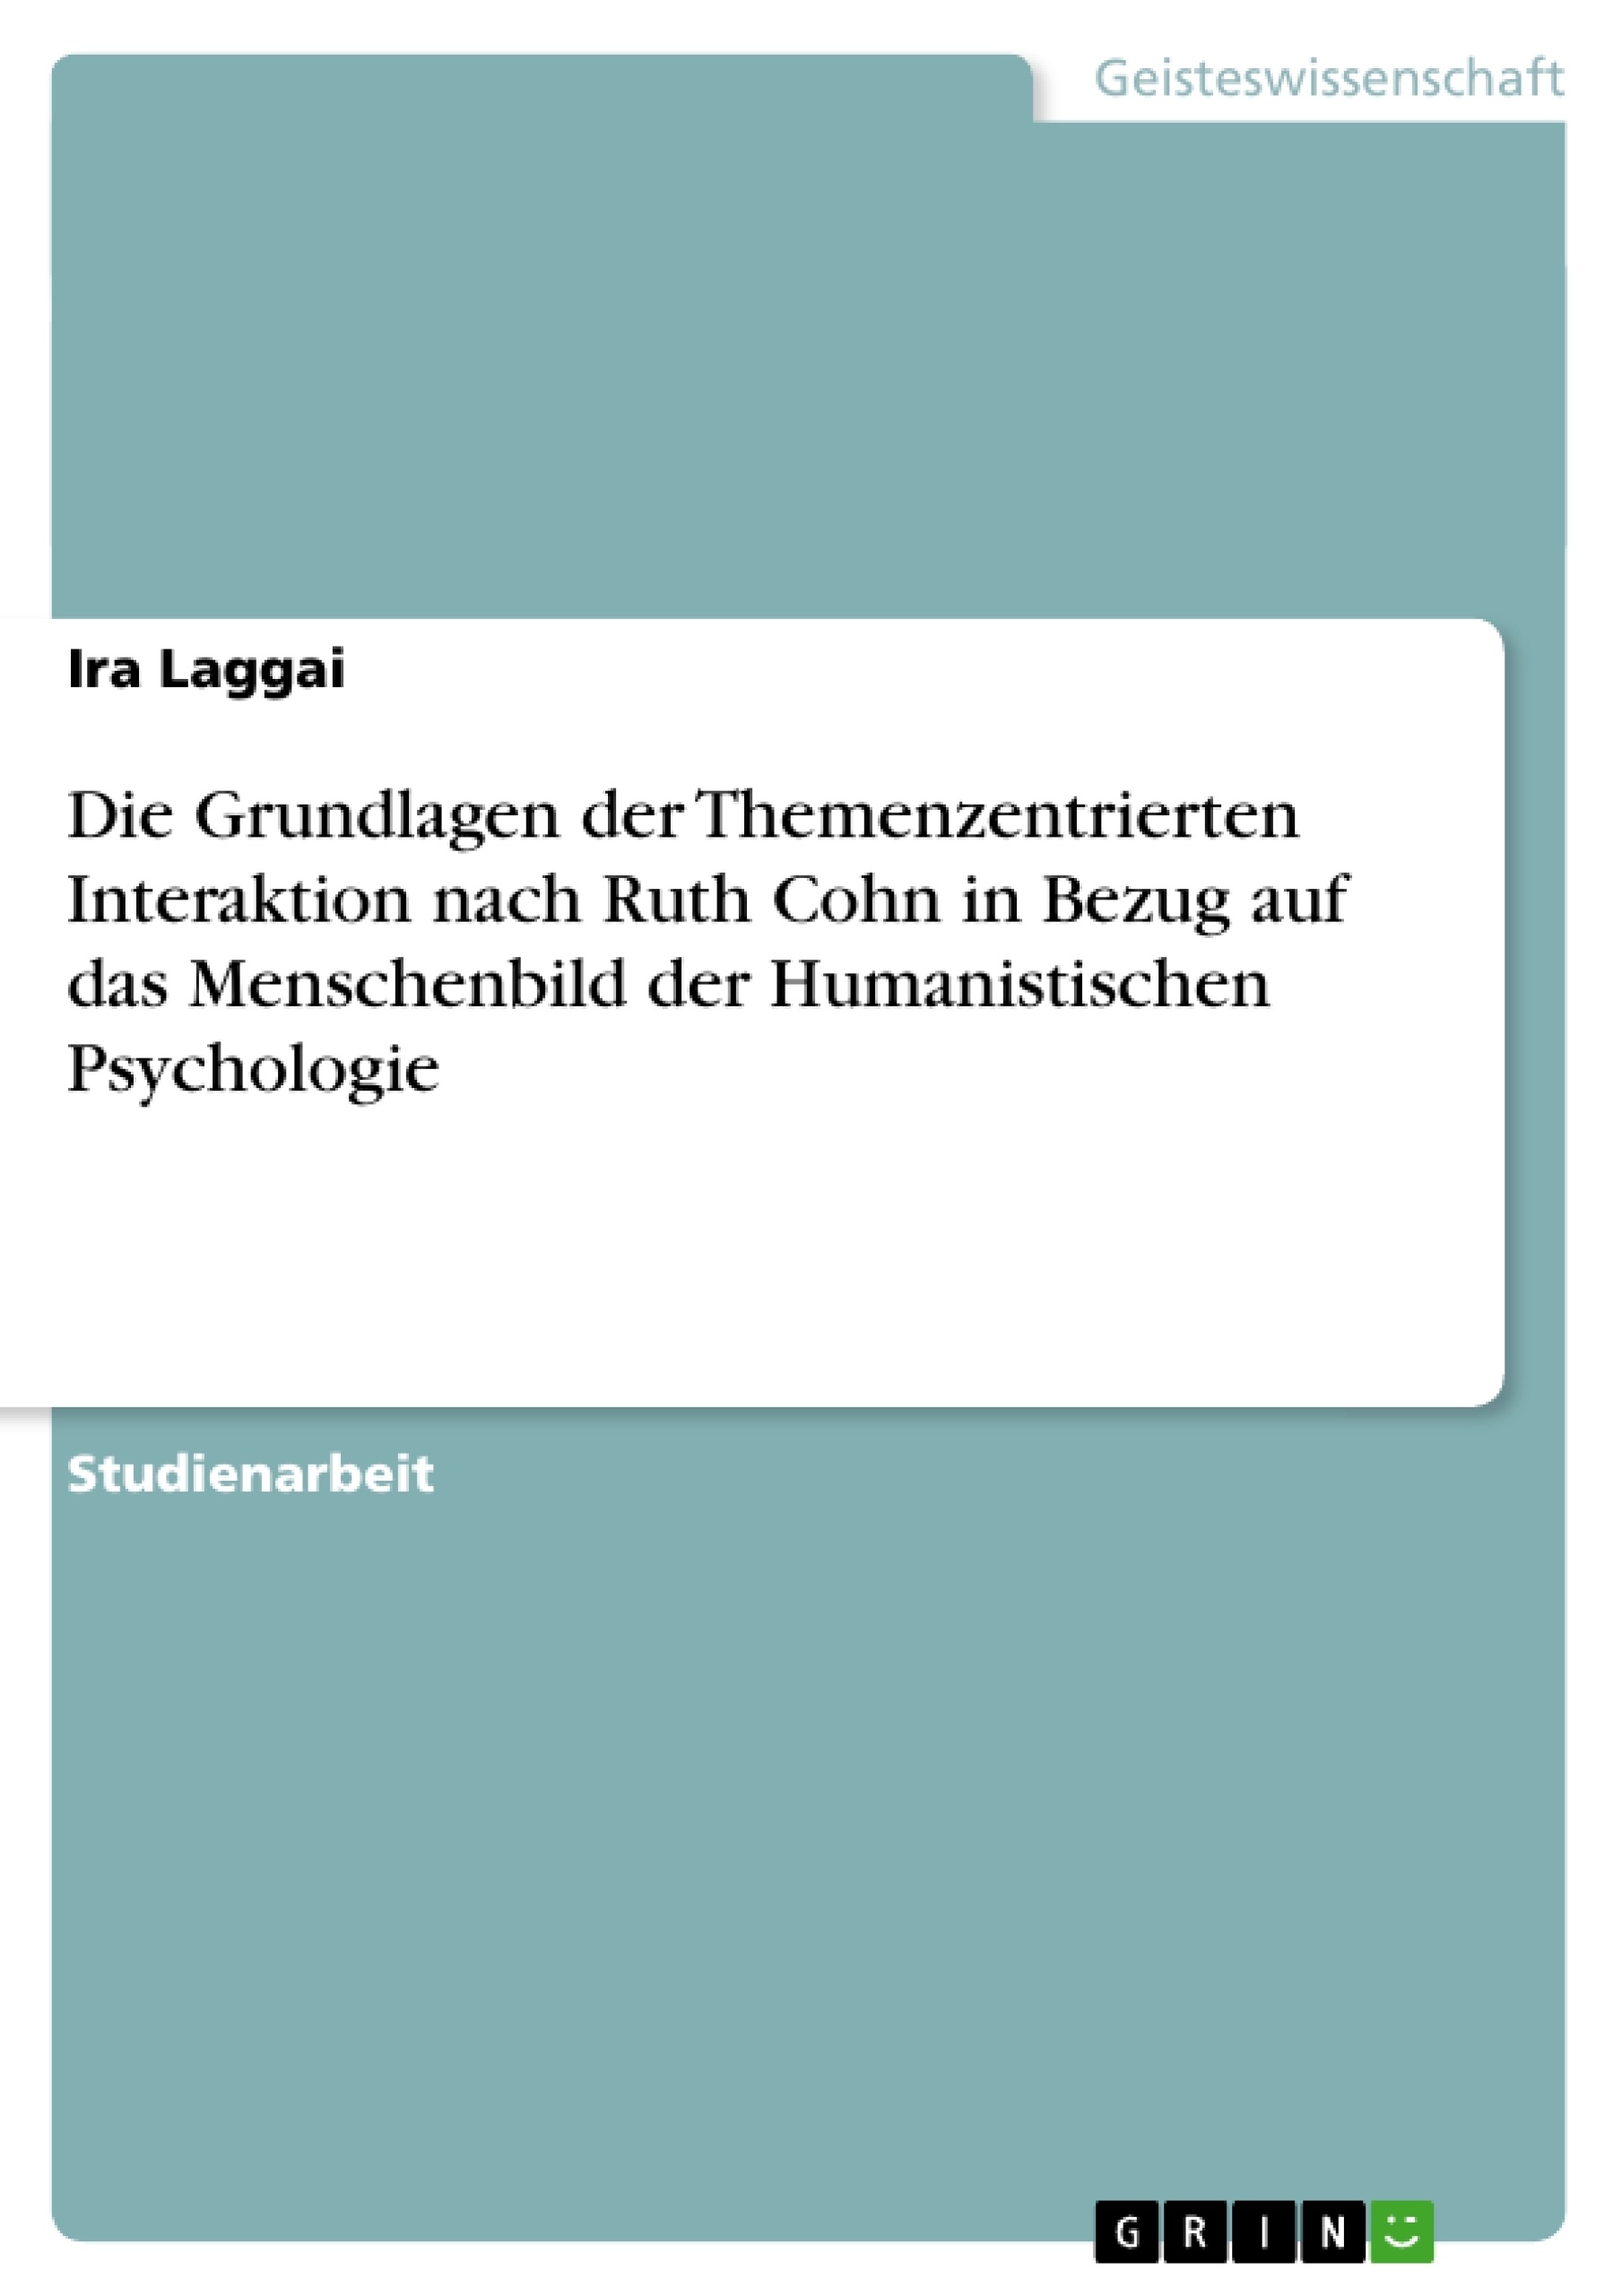 Titel: Die Grundlagen der Themenzentrierten Interaktion nach Ruth Cohn  in Bezug auf das Menschenbild der Humanistischen Psychologie